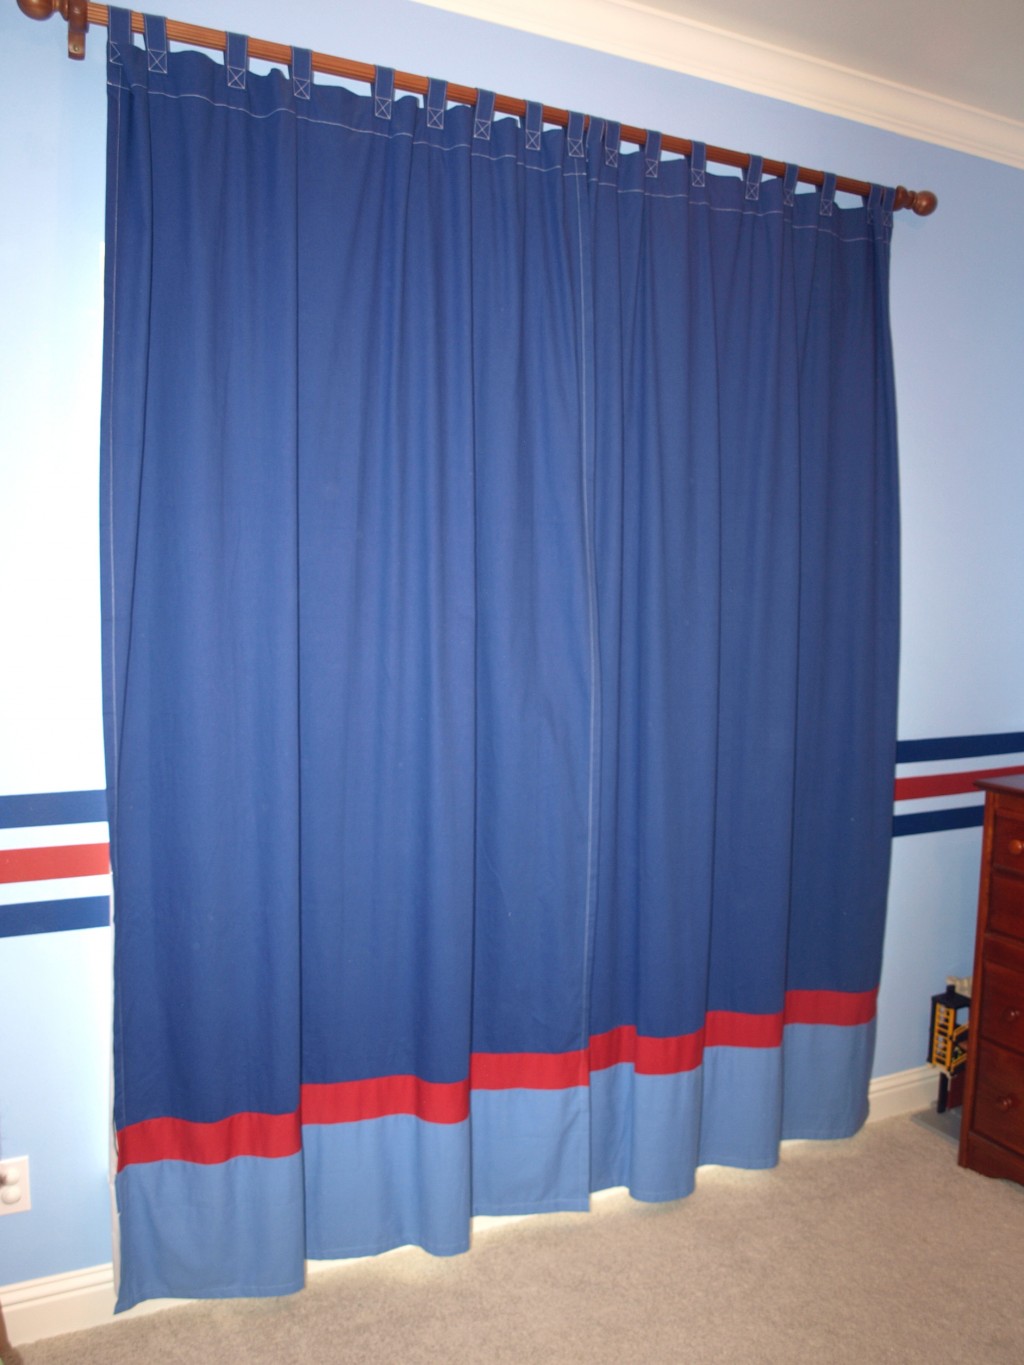 Studio Curtains in Curtain